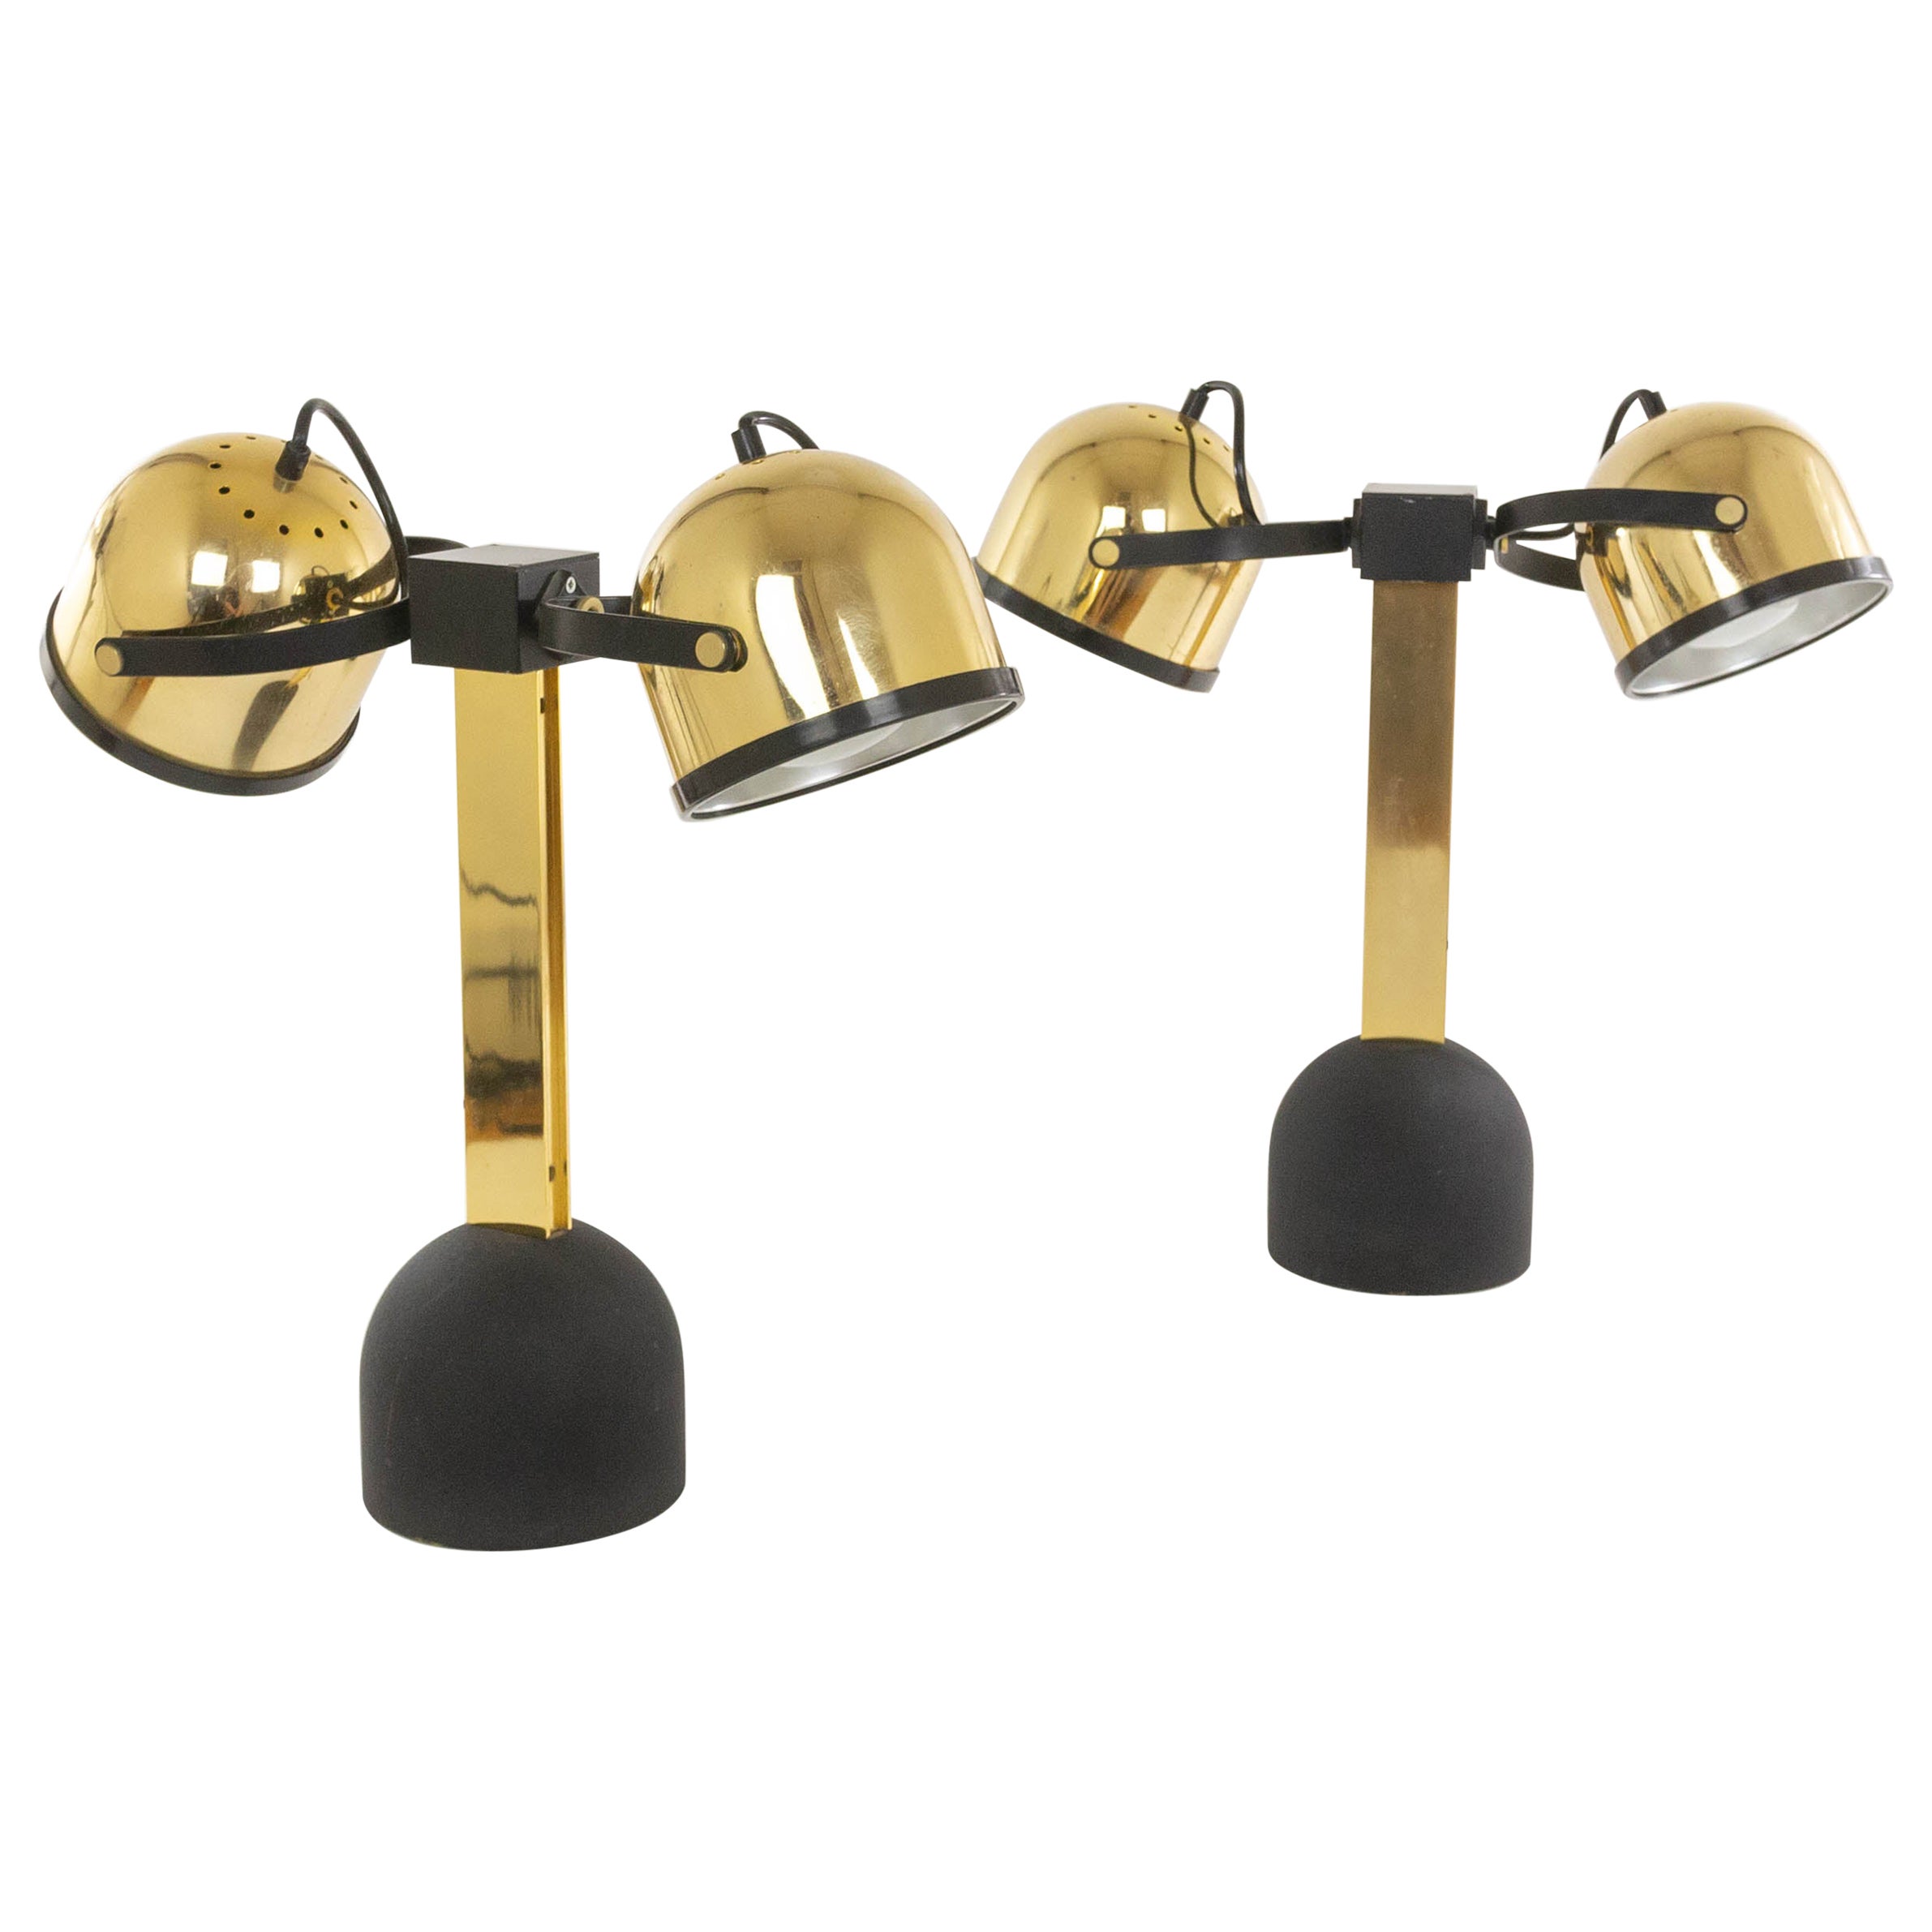 Pair of brass Trepiù table lamps by Gae Aulenti & Livio Castiglioni for Stilnovo